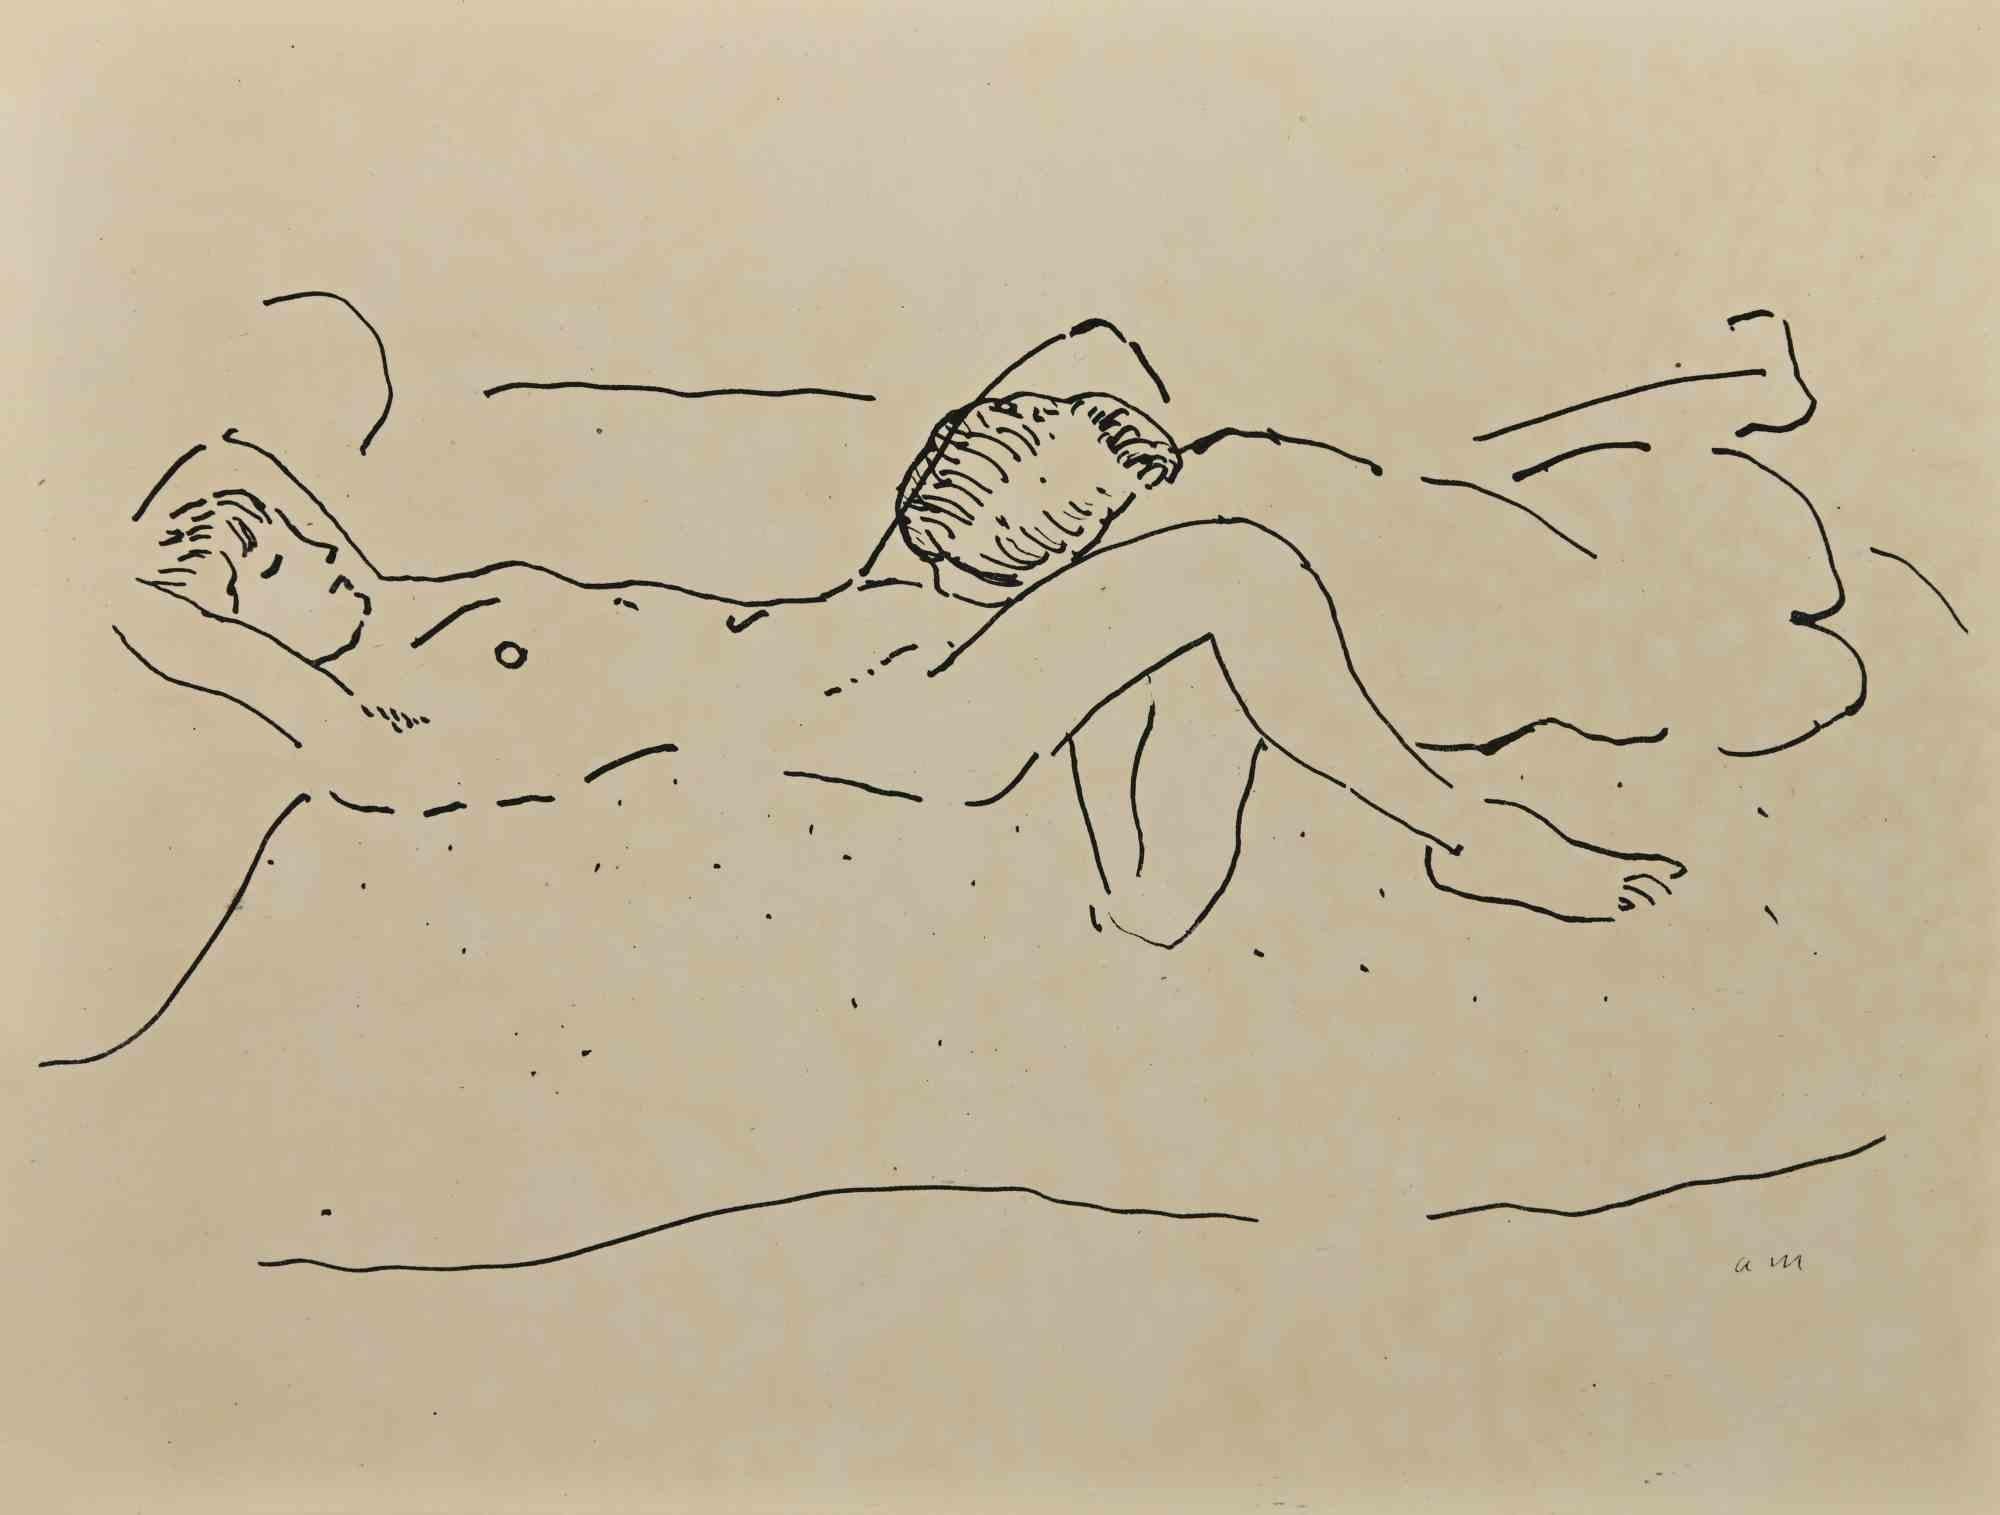 Erotic Scene ist eine wunderschöne Lithographie auf elfenbeinfarbenem Papier, die in den 1920er Jahren von Albert Marquet geschaffen wurde.  (Bordeaux, 1875 - Paris, 1947).

Monogrammiert auf der Platte am unteren Rand.

Aus der Suite L'Académie des